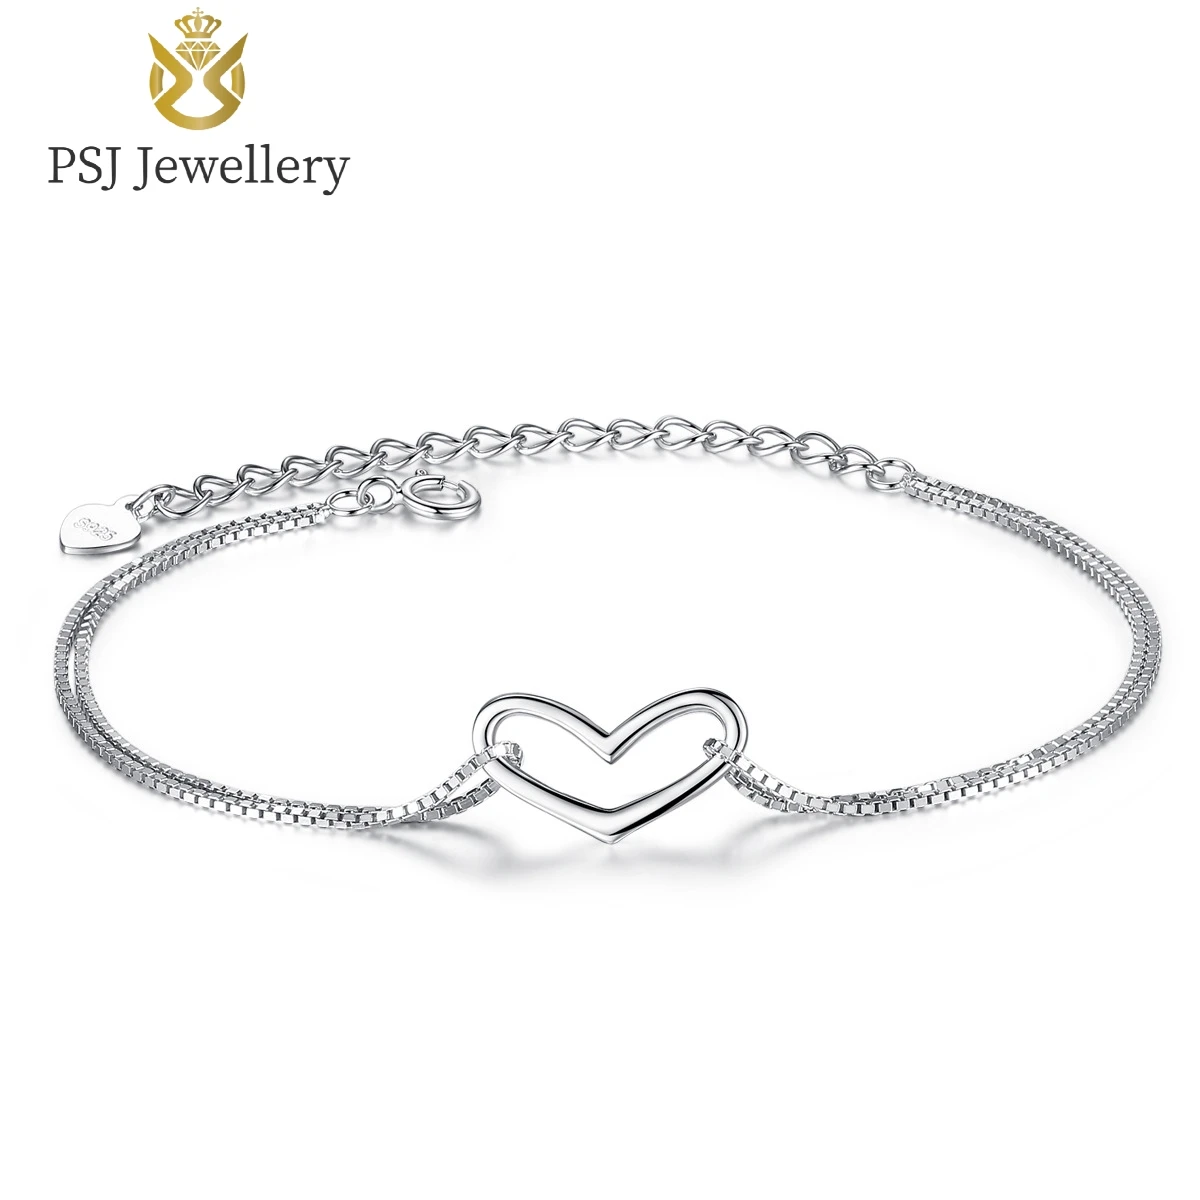 PSJ Модные ювелирные изделия Дизайн сердца Высокая полированная цепочка 16,5 см Расширенный браслет из стерлингового серебра S925 с родиевым покрытием для женщин